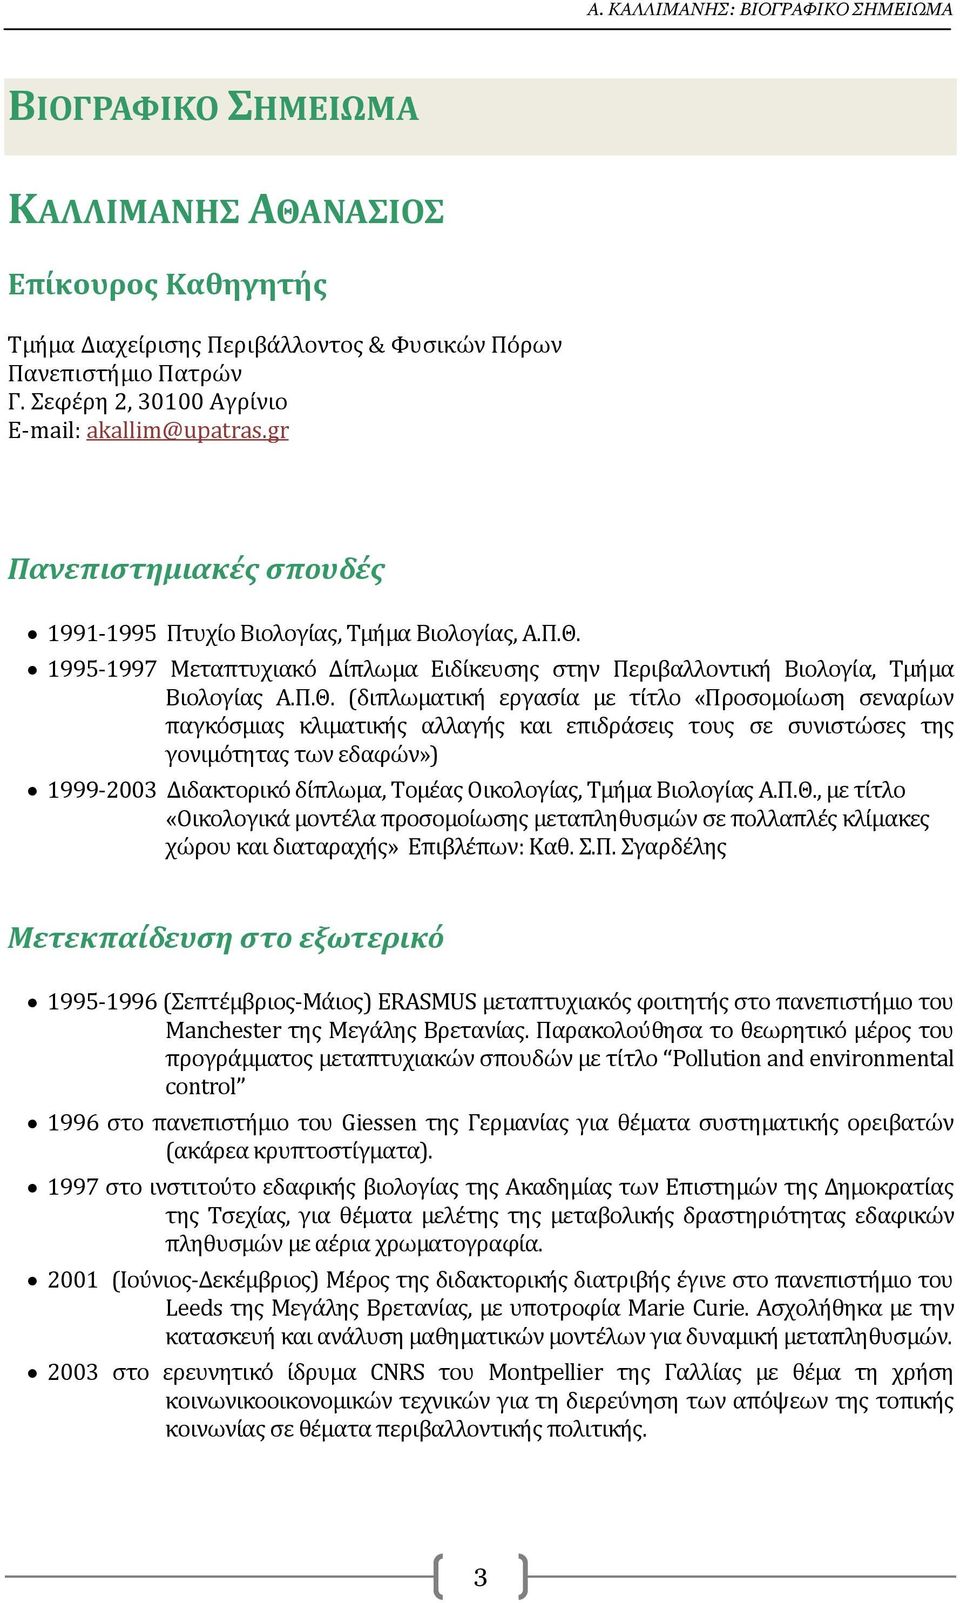 1995-1997 Μεταπτυχιακό Δίπλωμα Ειδίκευσης στην Περιβαλλοντική Βιολογία, Τμήμα Βιολογίας Α.Π.Θ.